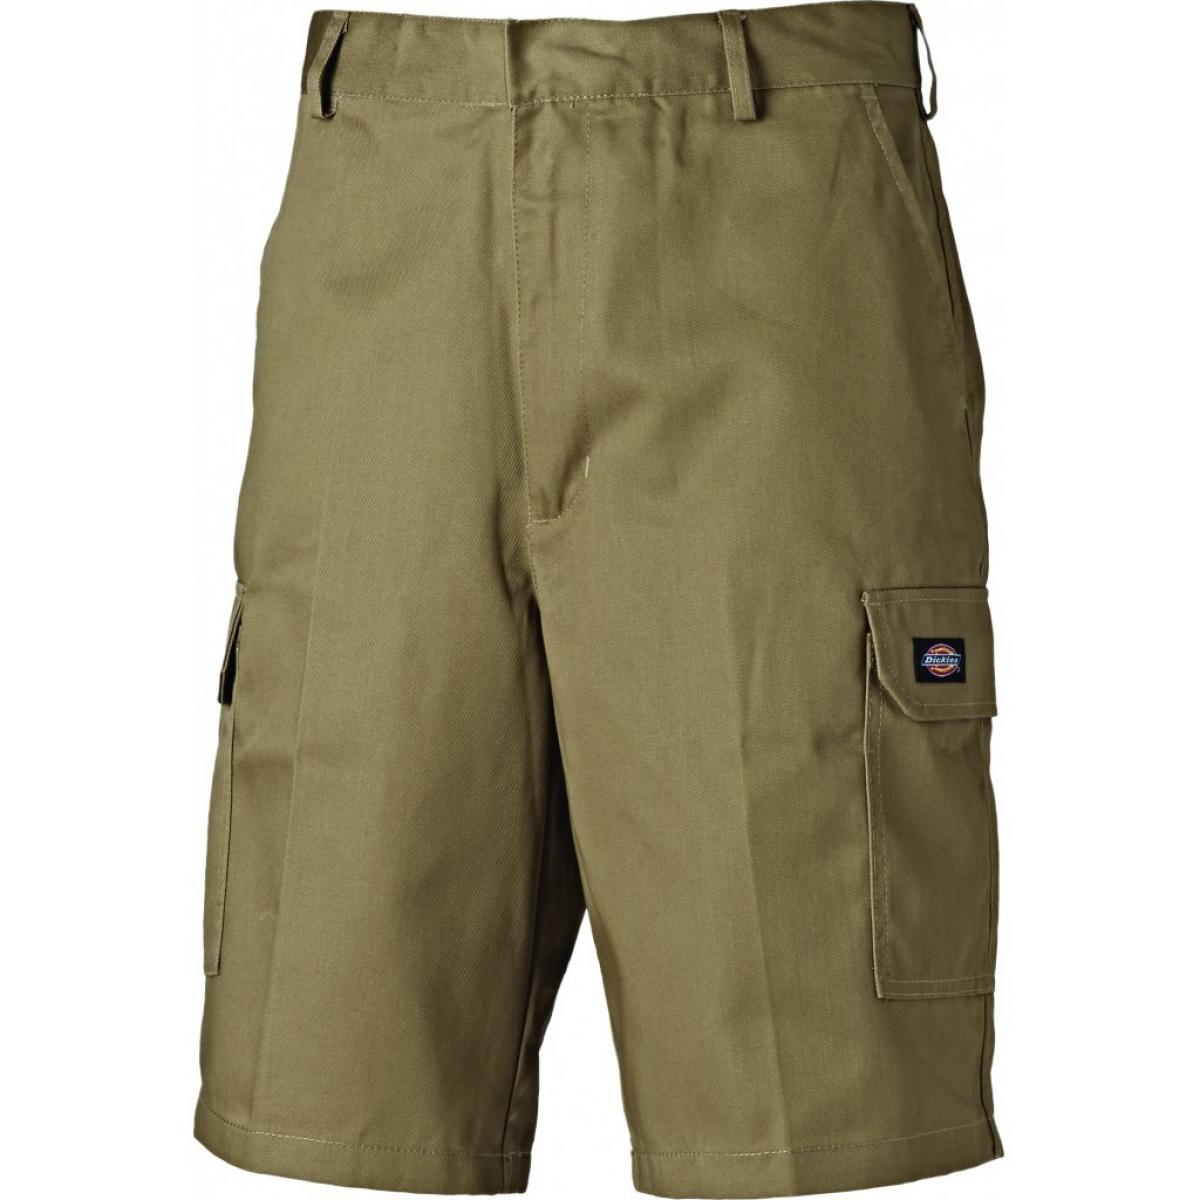 Hersteller: Dickies Herstellernummer: WD834 Artikelbezeichnung: Redhawk Cargo-Shorts - Arbeishose Kurz Farbe: Khaki